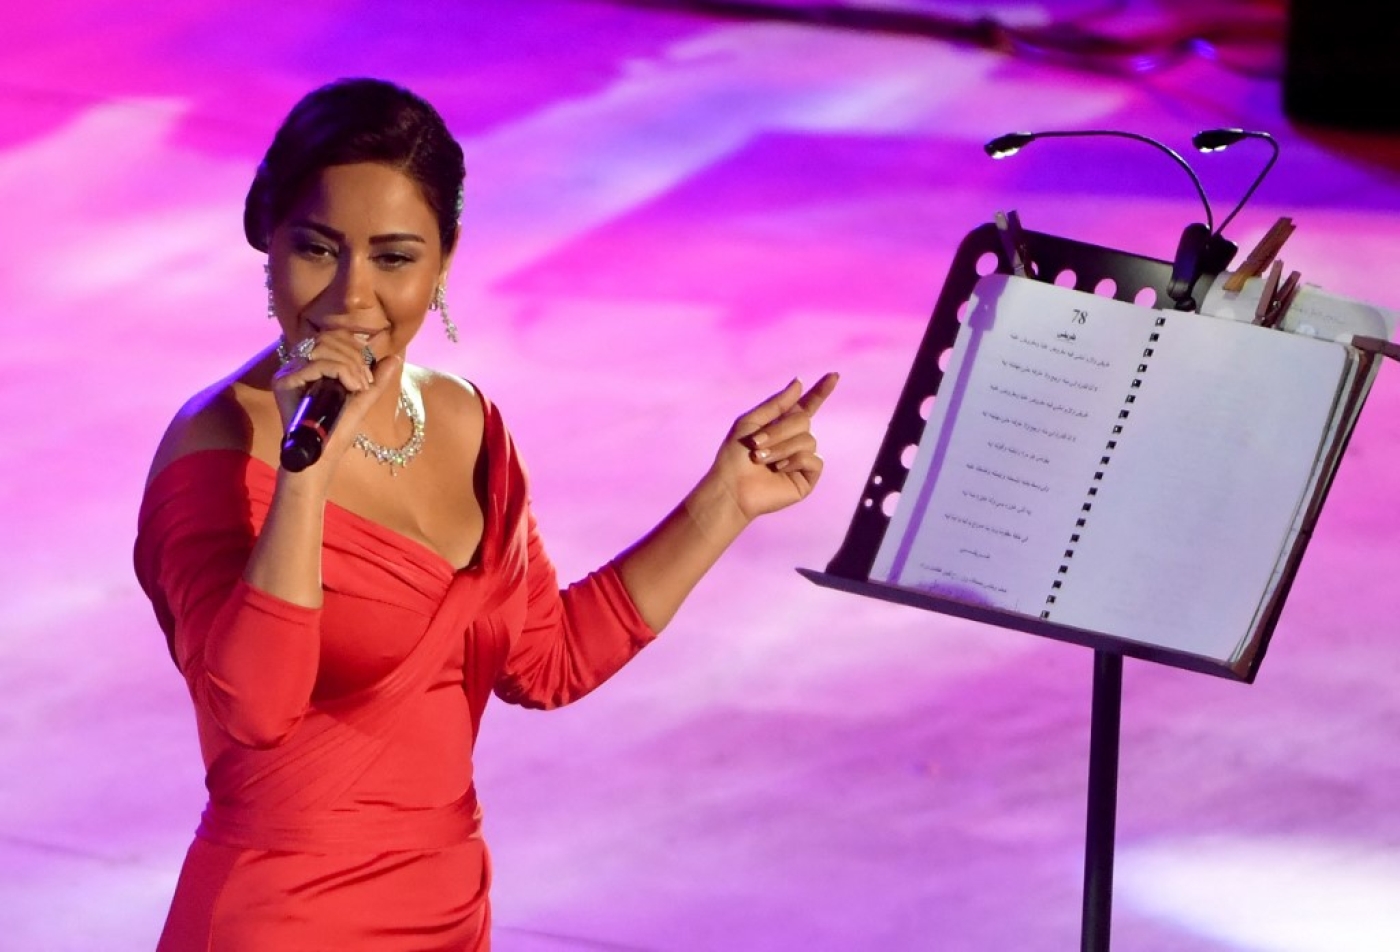 La chanteuse égyptienne Sherine Abdel Wahab se produit à l’amphithéâtre romain lors de la 53e session du Festival international de Carthage près de Tunis, le 28 juillet 2017 (AFP/Fethi Belaid)